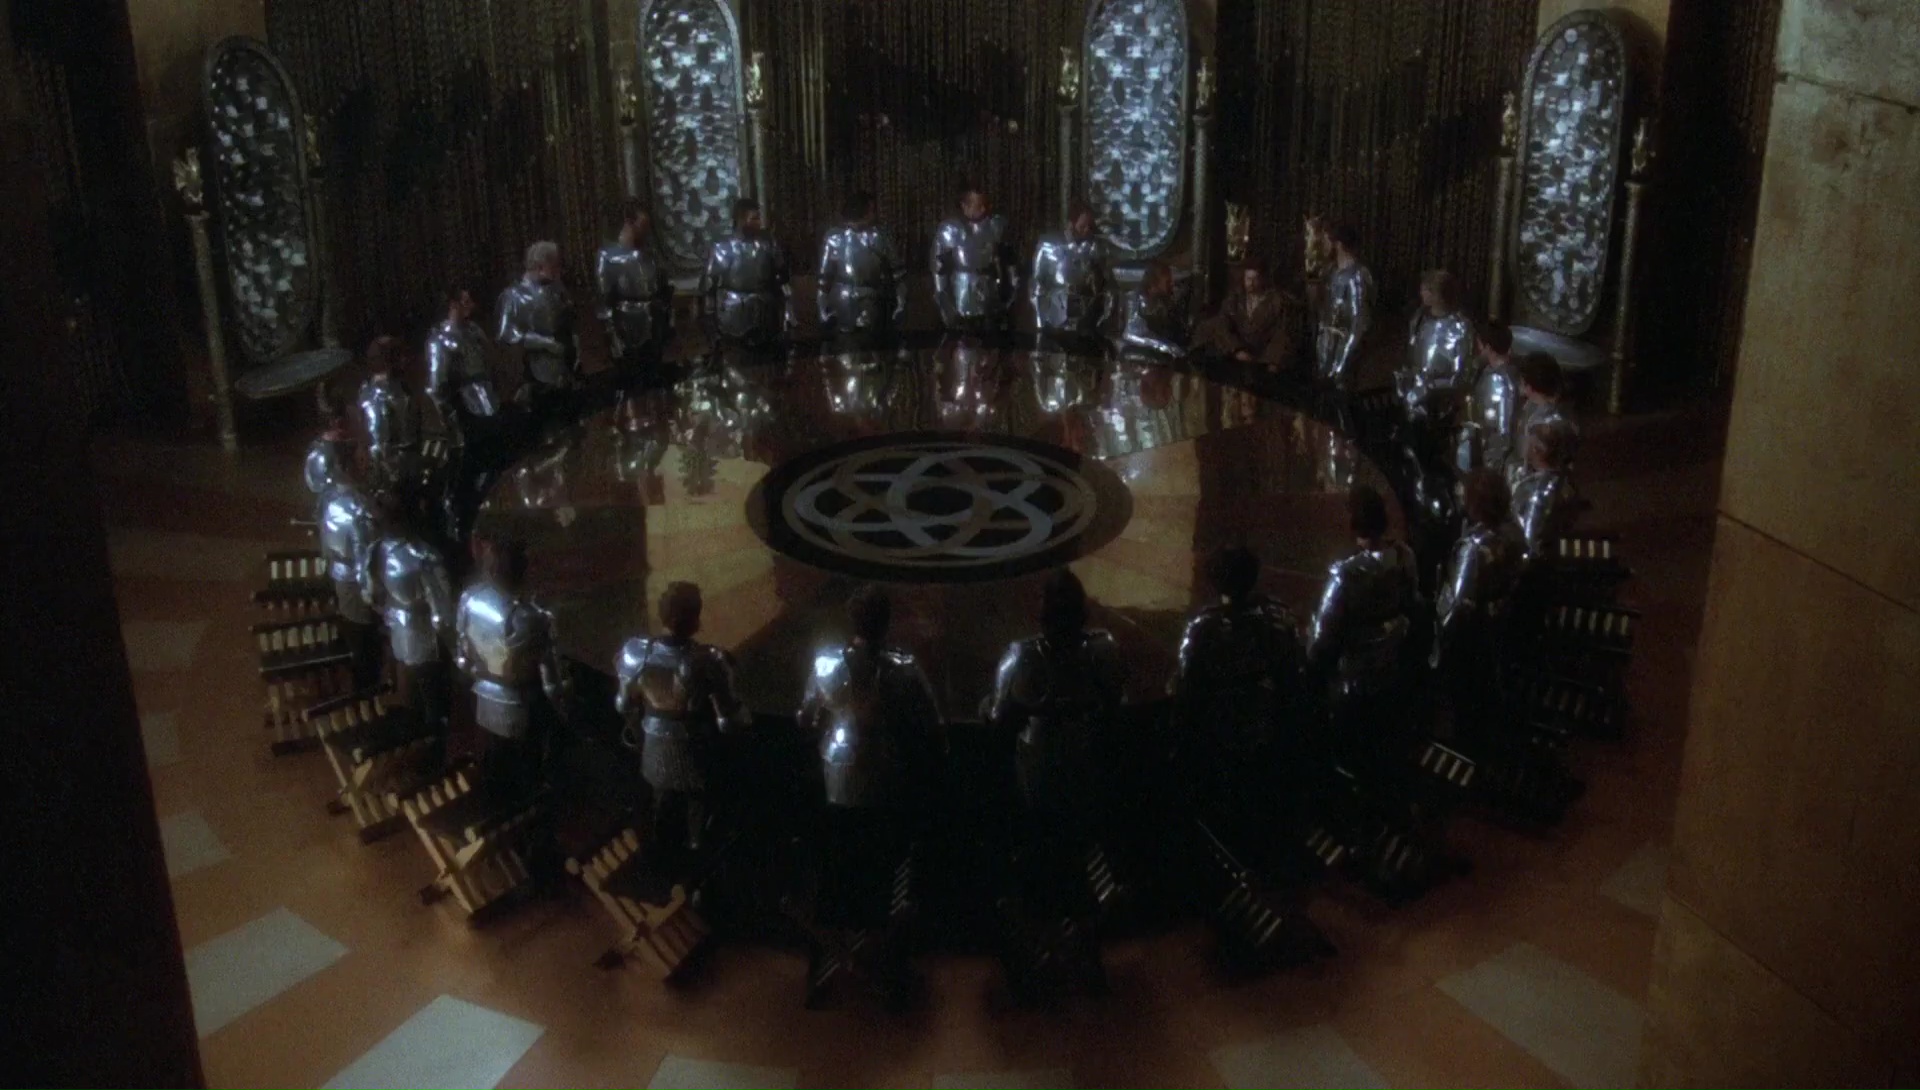 Собрание за круглым столом короля Артура